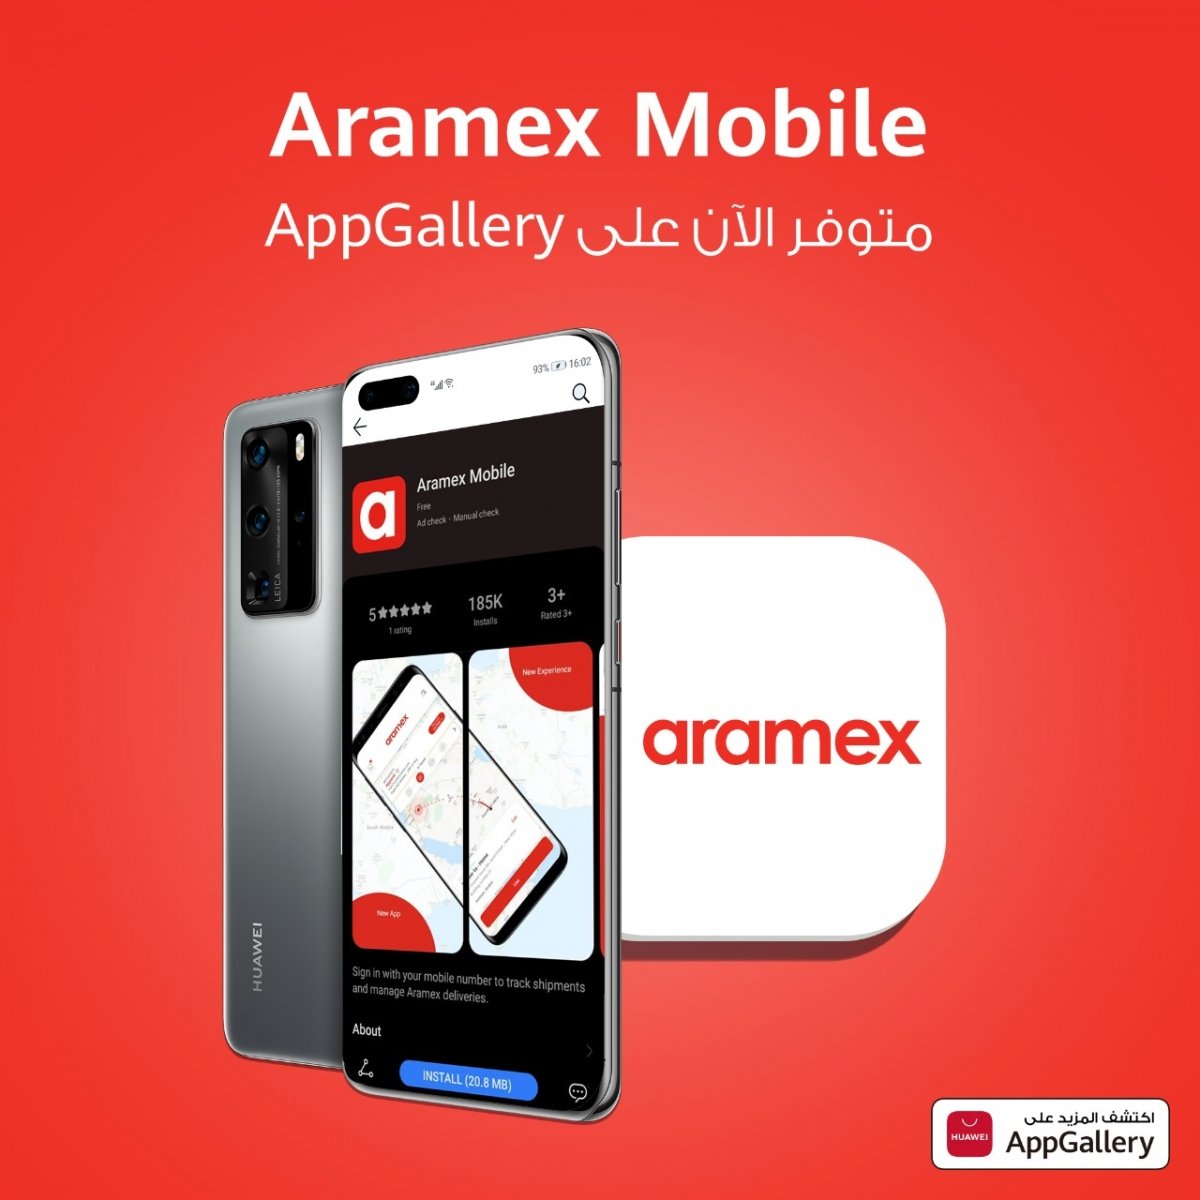 منصة HUAWEI AppGallery تتيح الآن تطبيق Aramex Mobile لكافة مستخدميها